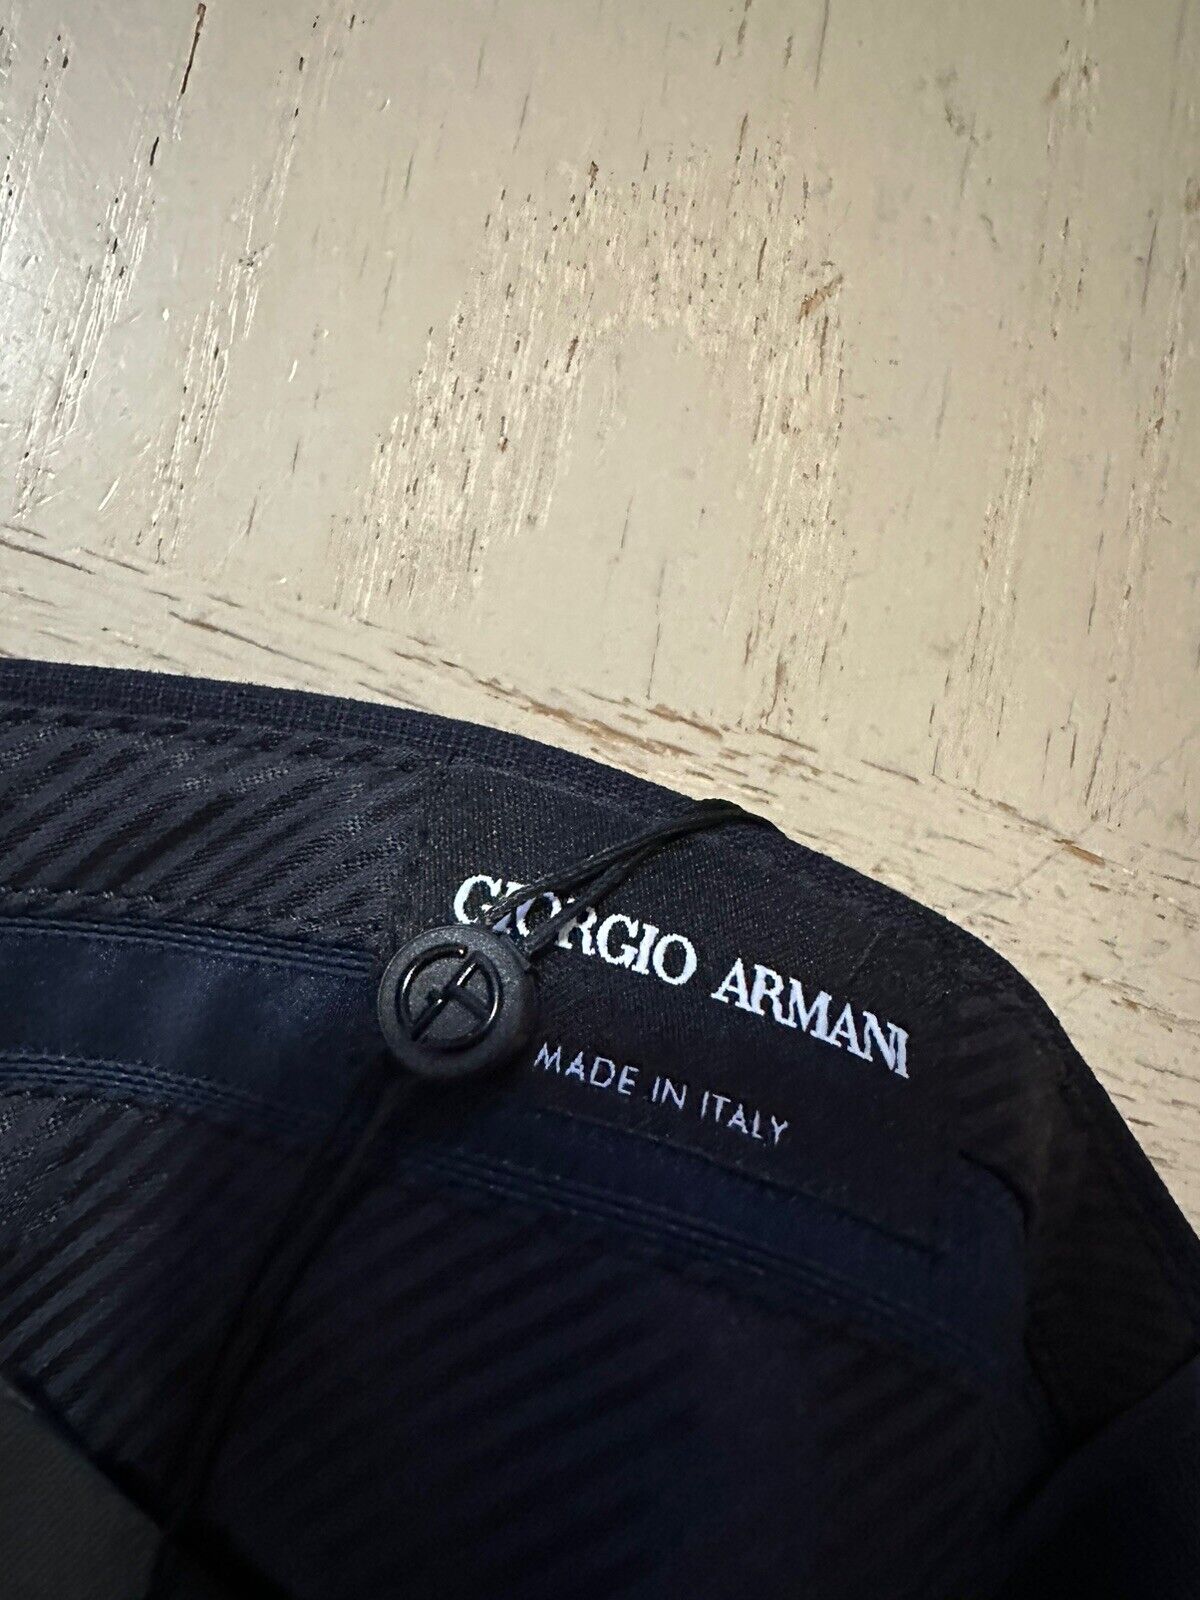 NWT $695 Giorgio Armani Mens Dress Pants Navy 42 US/58 Eu Italy